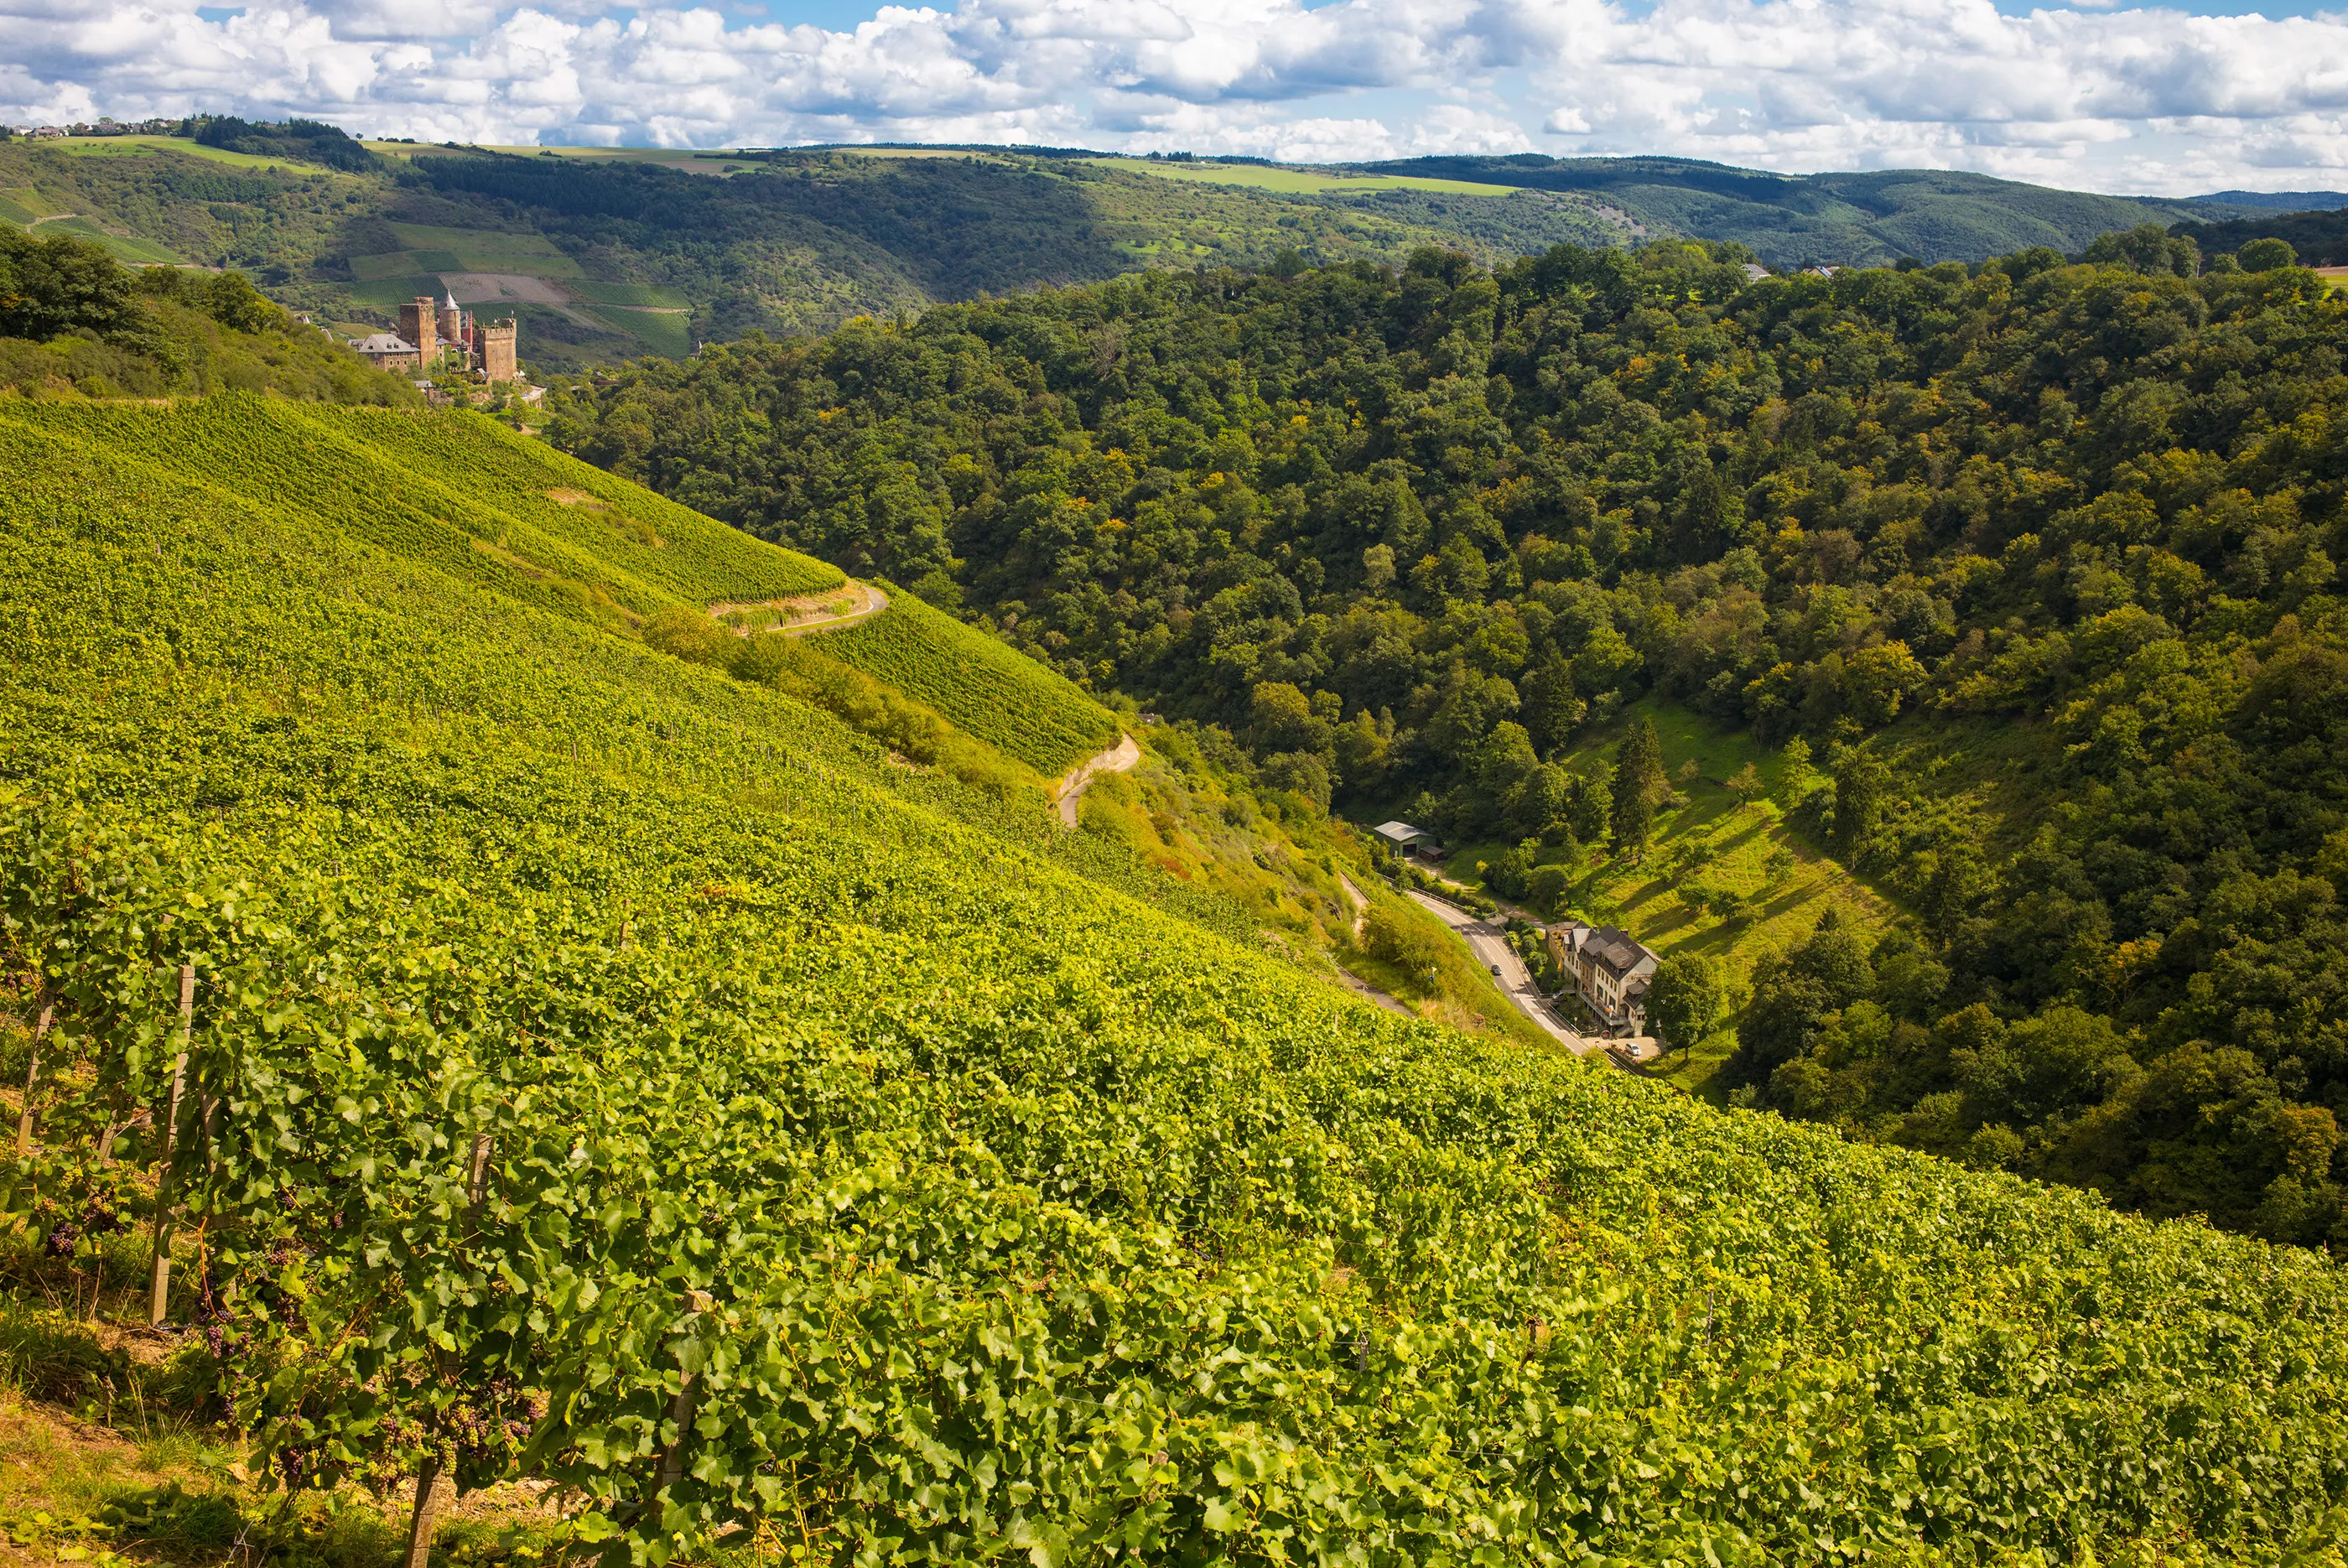 Lanius-Knab Winery Owner in Germany, Europe | Wineries - Rated 0.9